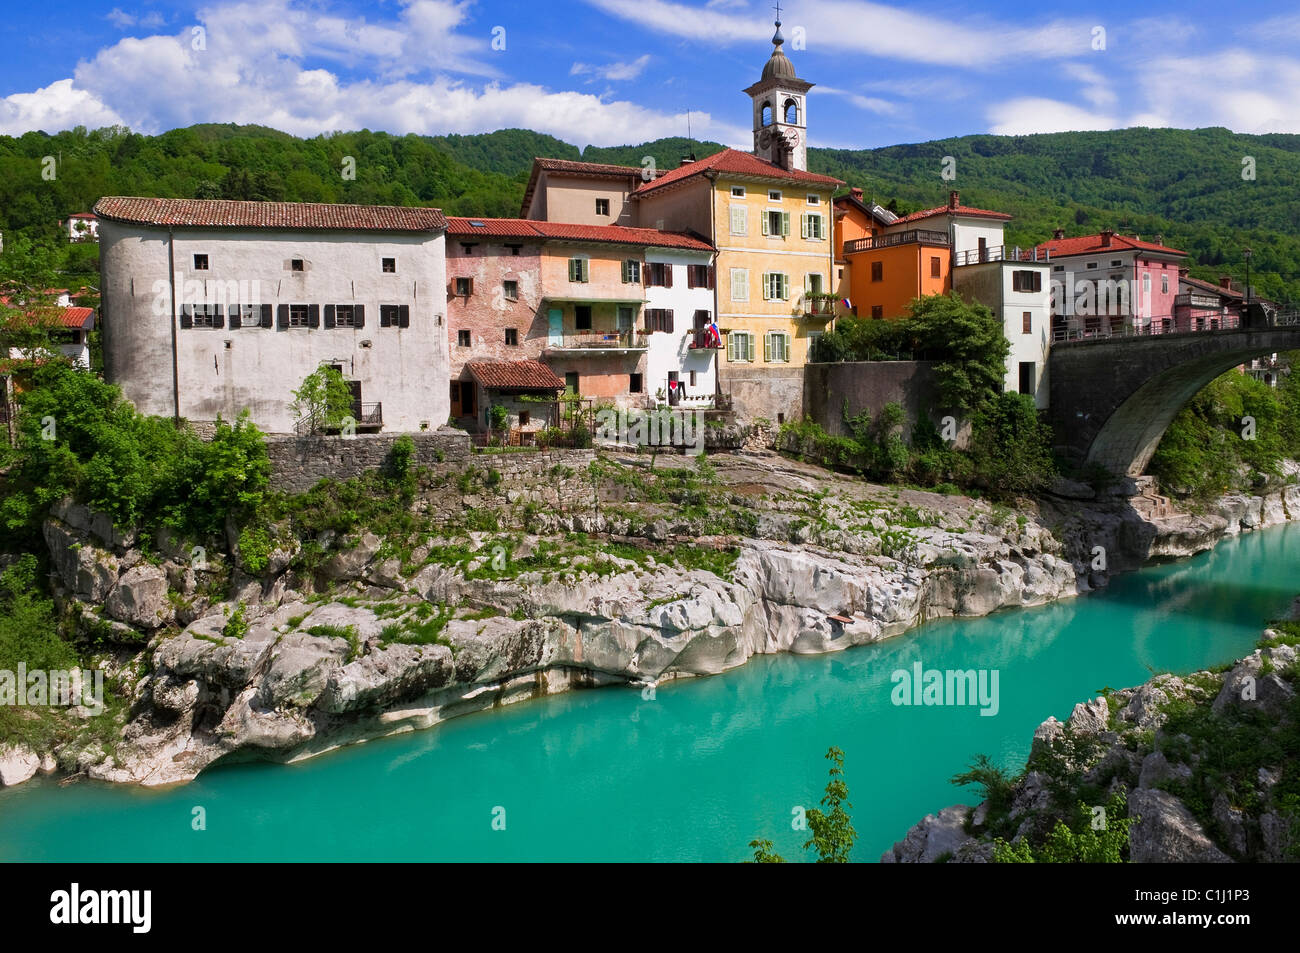 Kanal ob Soci, Soca River, Slovenia Stock Photo